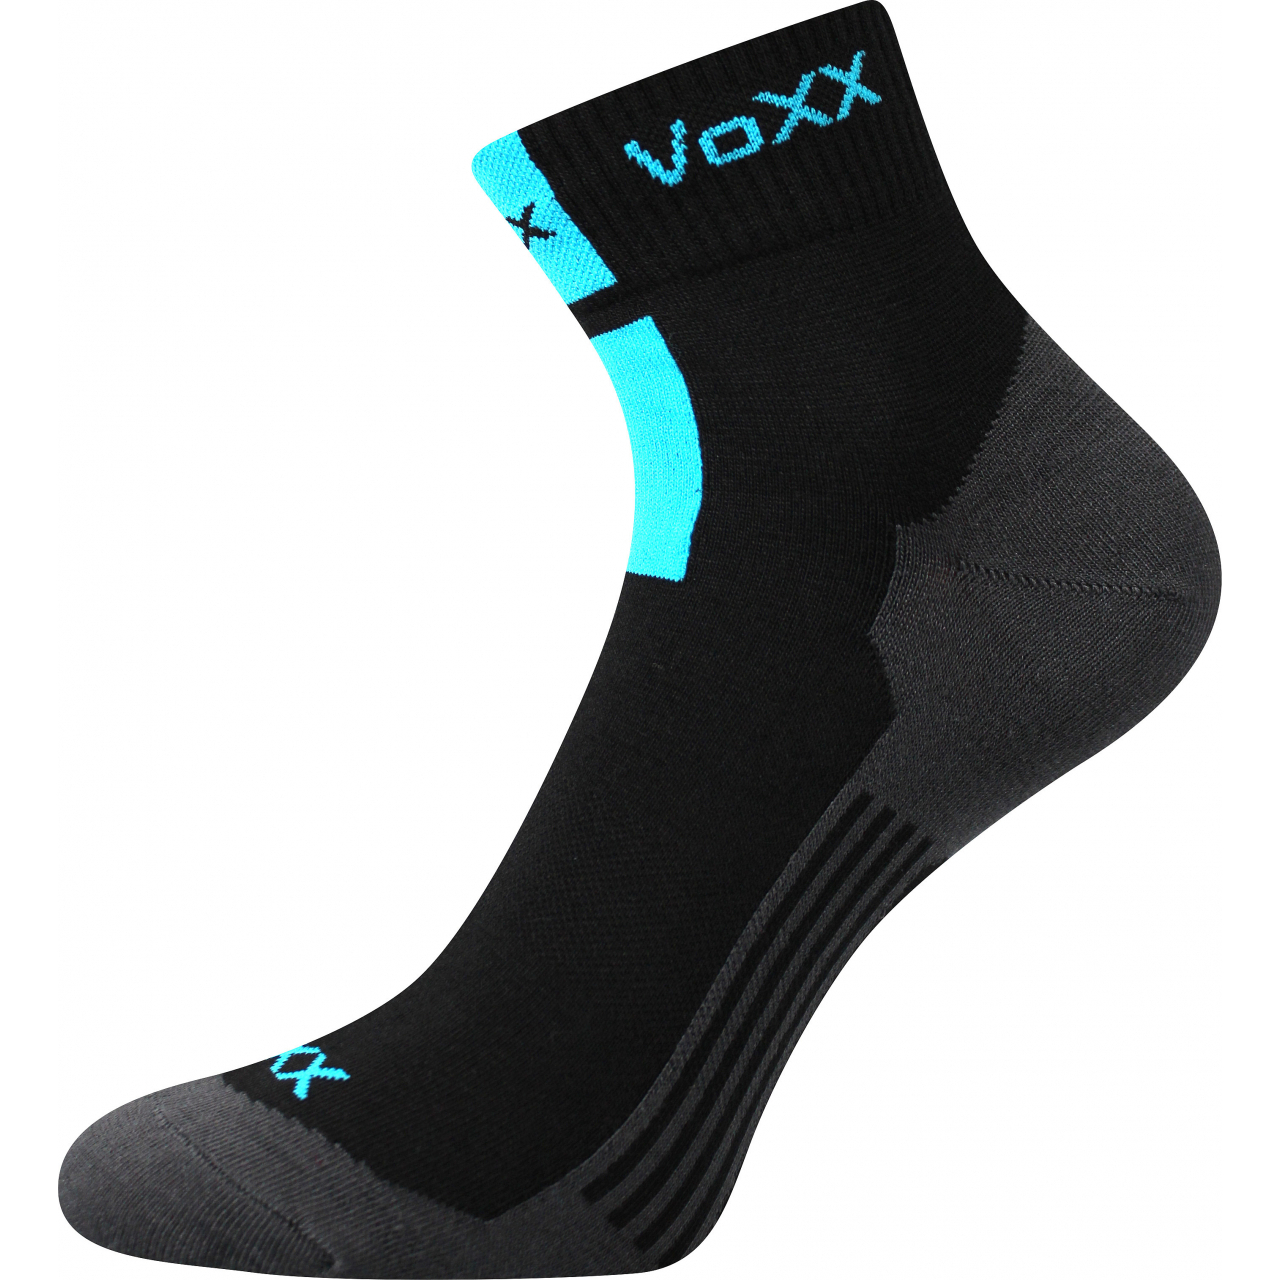 Ponožky unisex klasické Voxx Mostan silproX - černé, 43-46